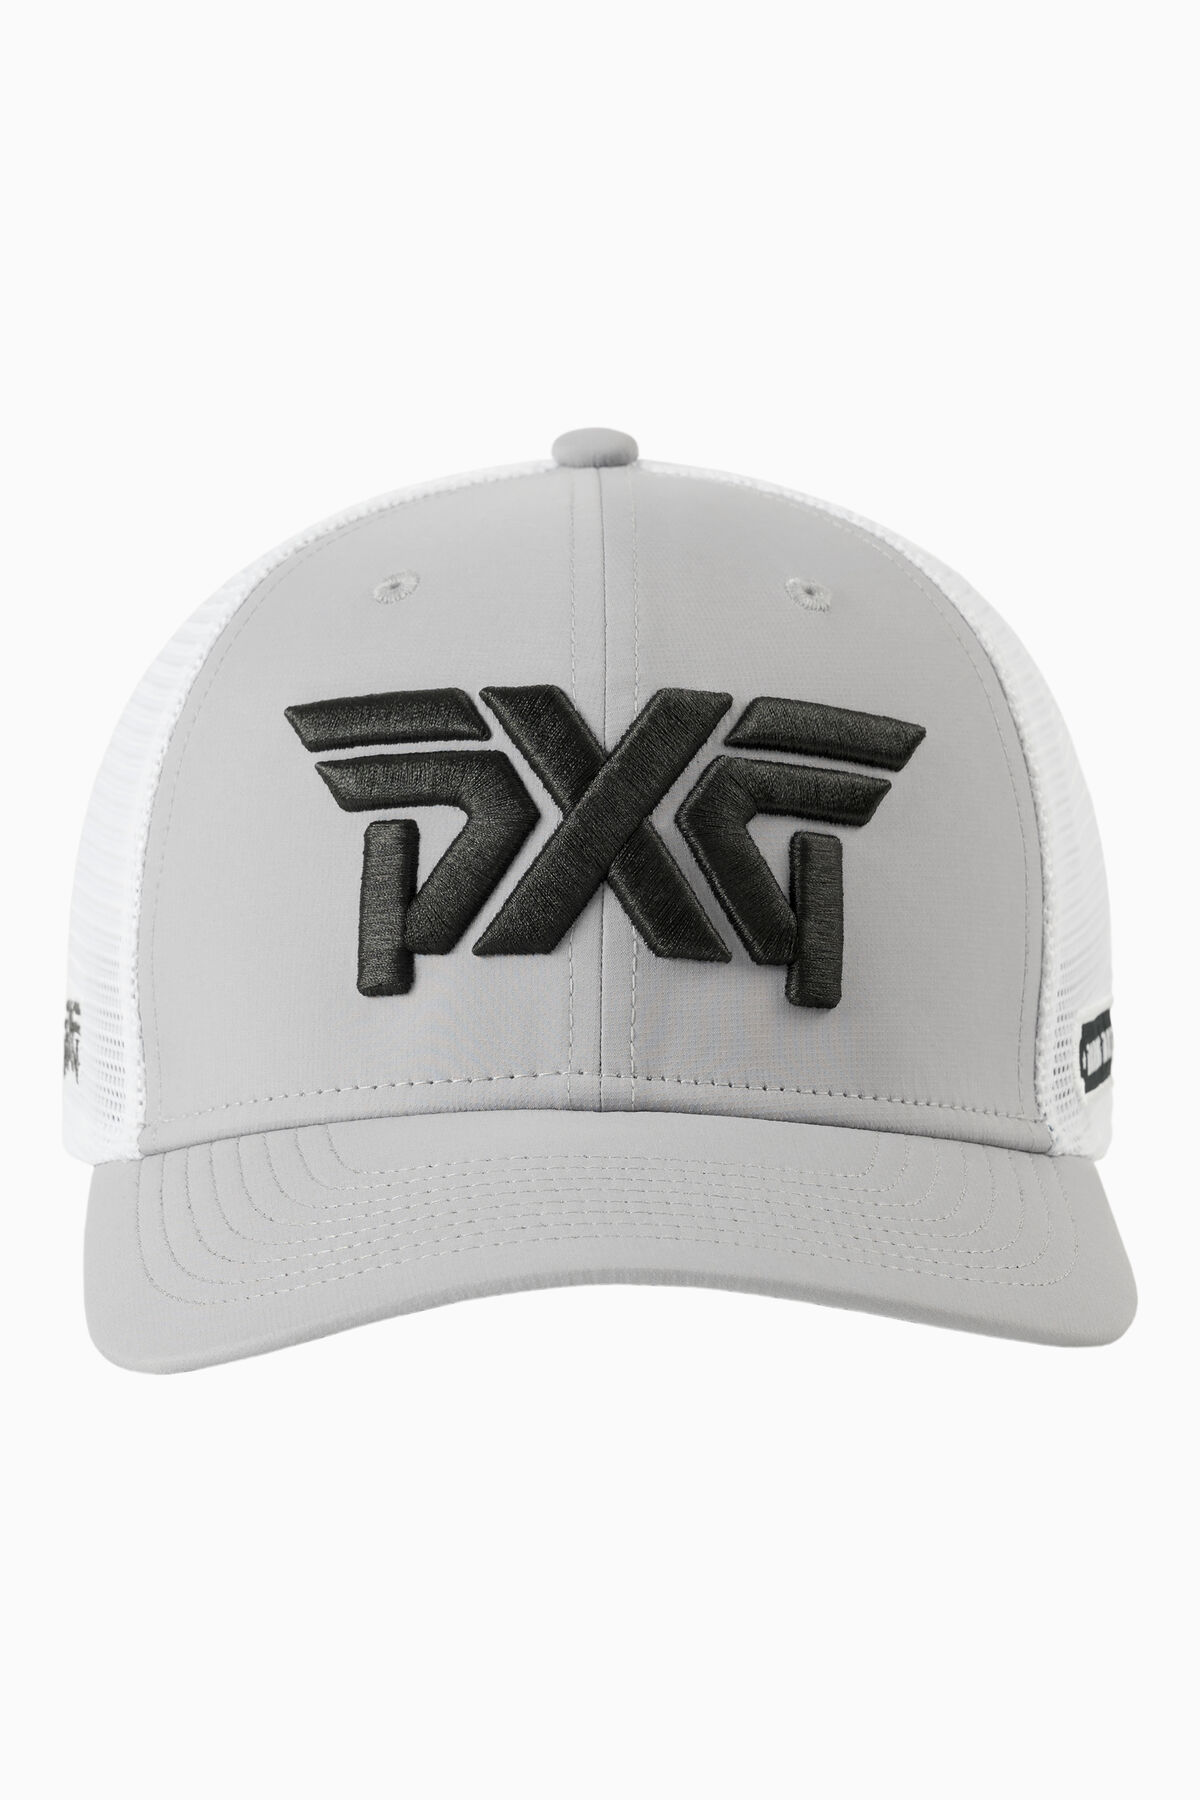 PXG x Darius Rucker Trucker Hat 